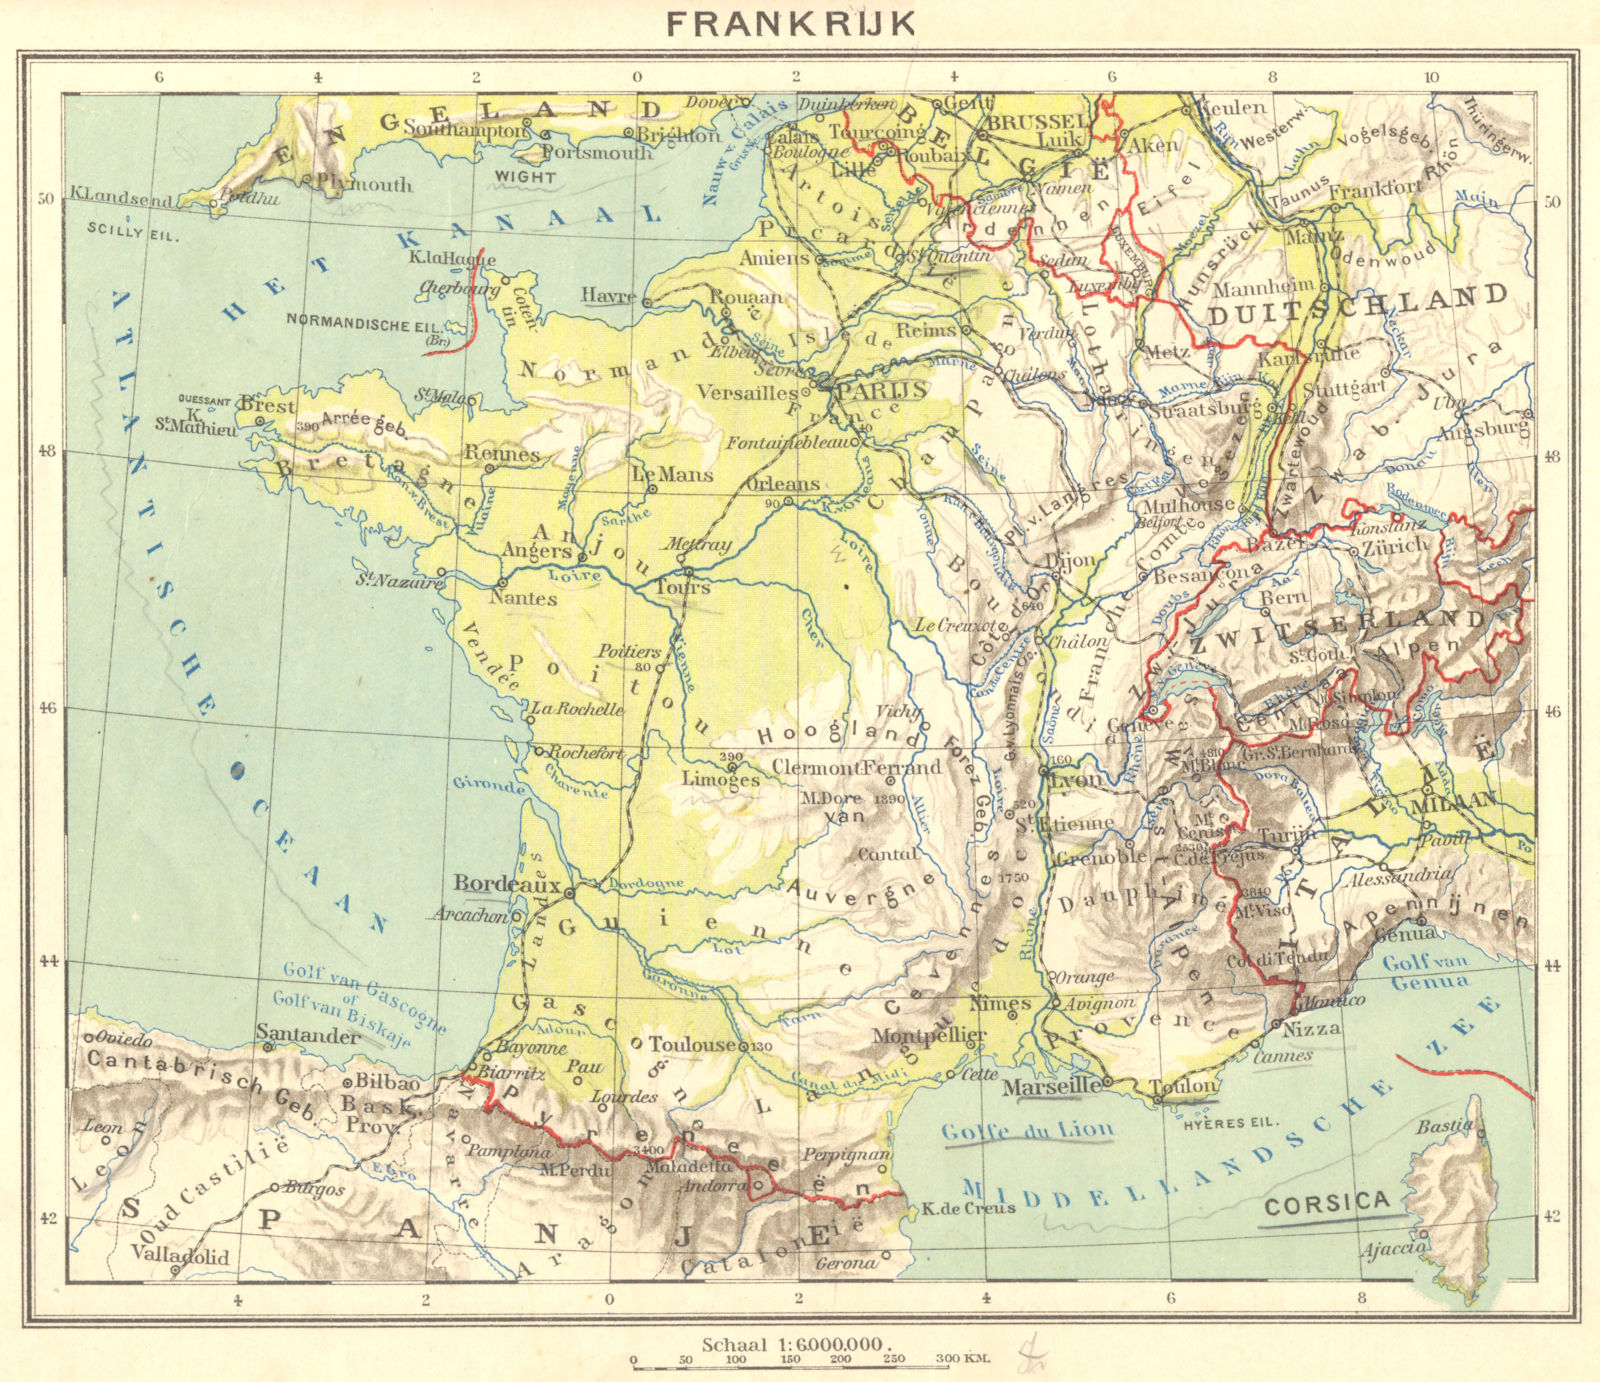 FRANCE. Frankrijk 1922 old vintage map plan chart